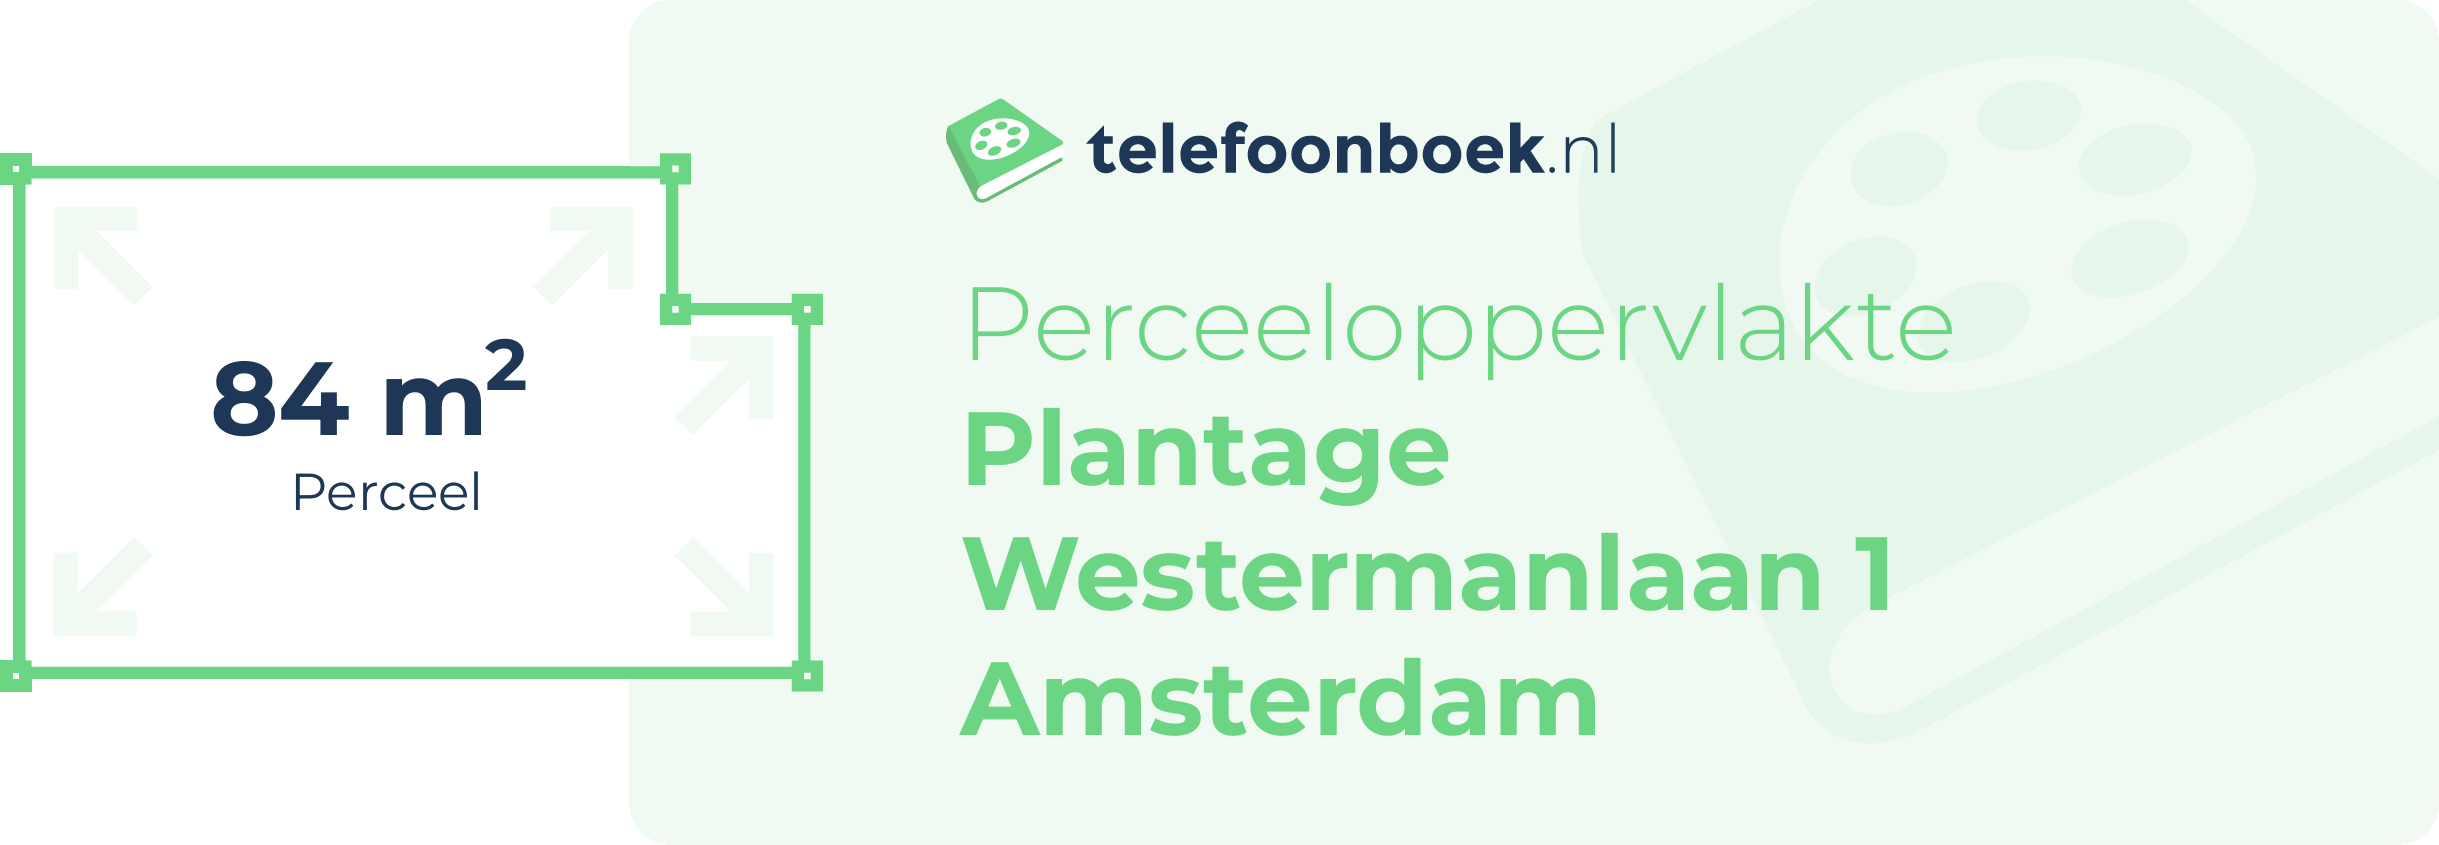 Perceeloppervlakte Plantage Westermanlaan 1 Amsterdam